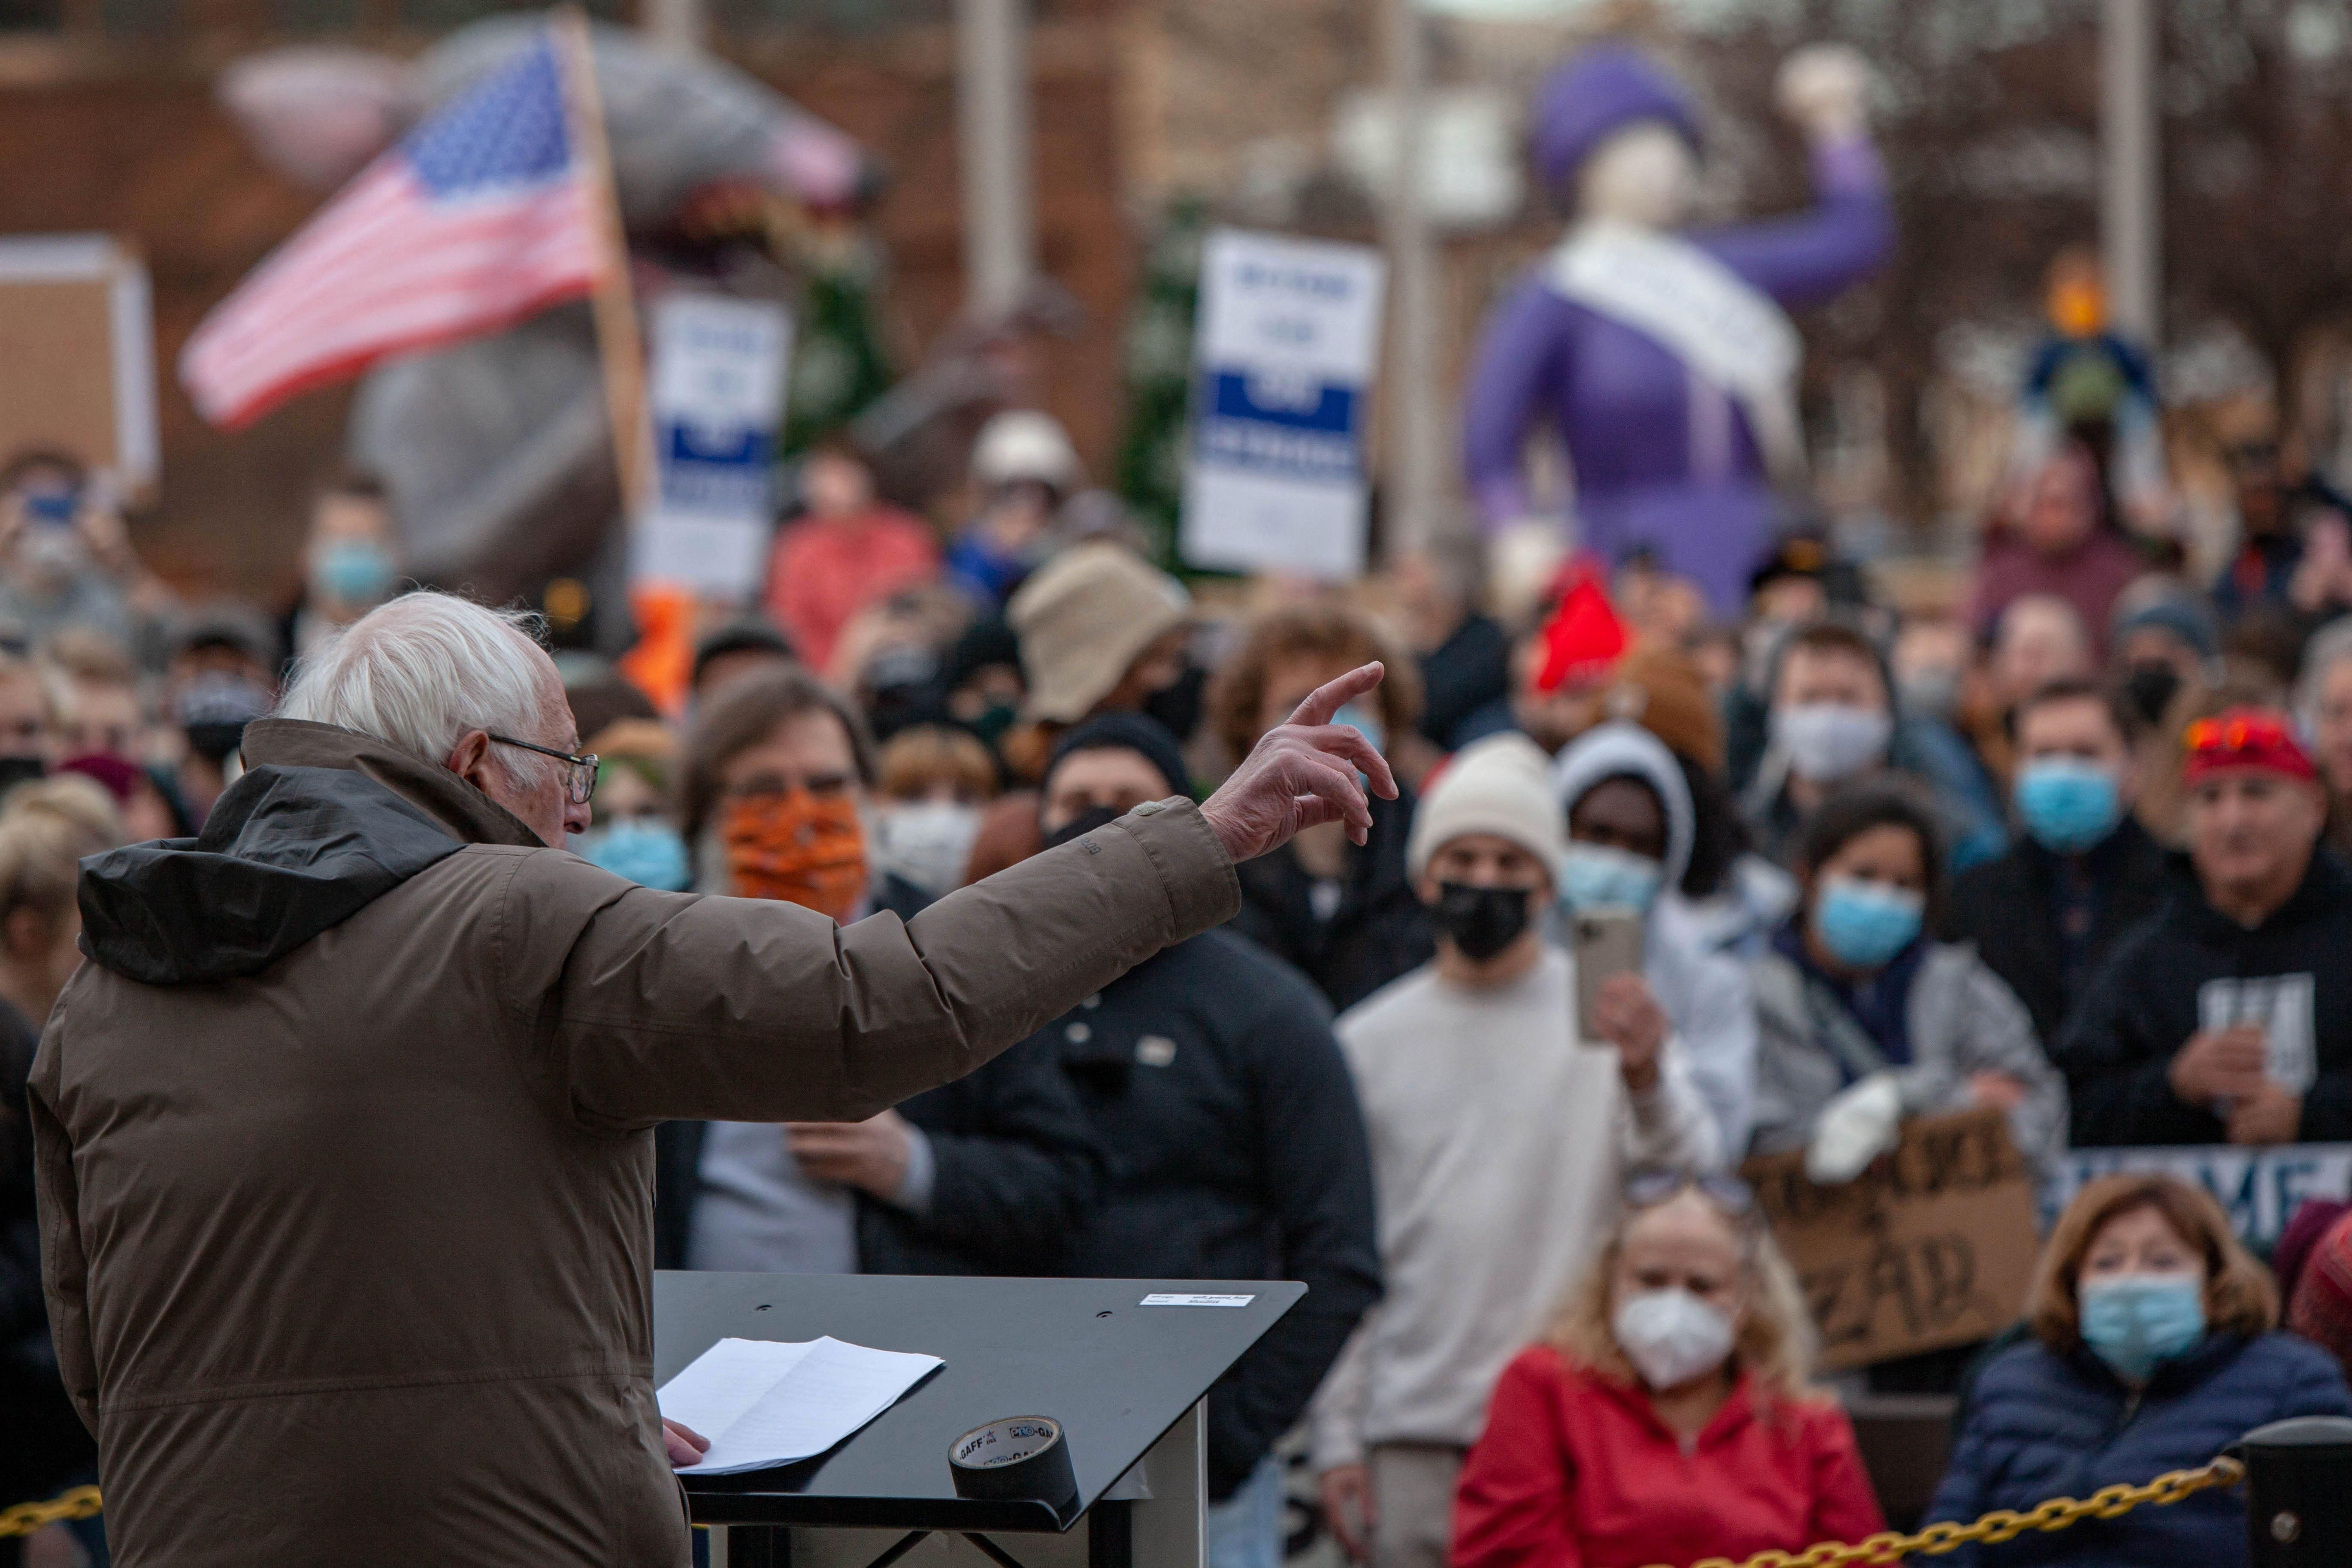 U.S. Sen. Bernie Sanders (I-Vt.) gestures as he speaks to striking Kellogg's workers in downtown Battle Creek, Michigan on December 17, 2021.